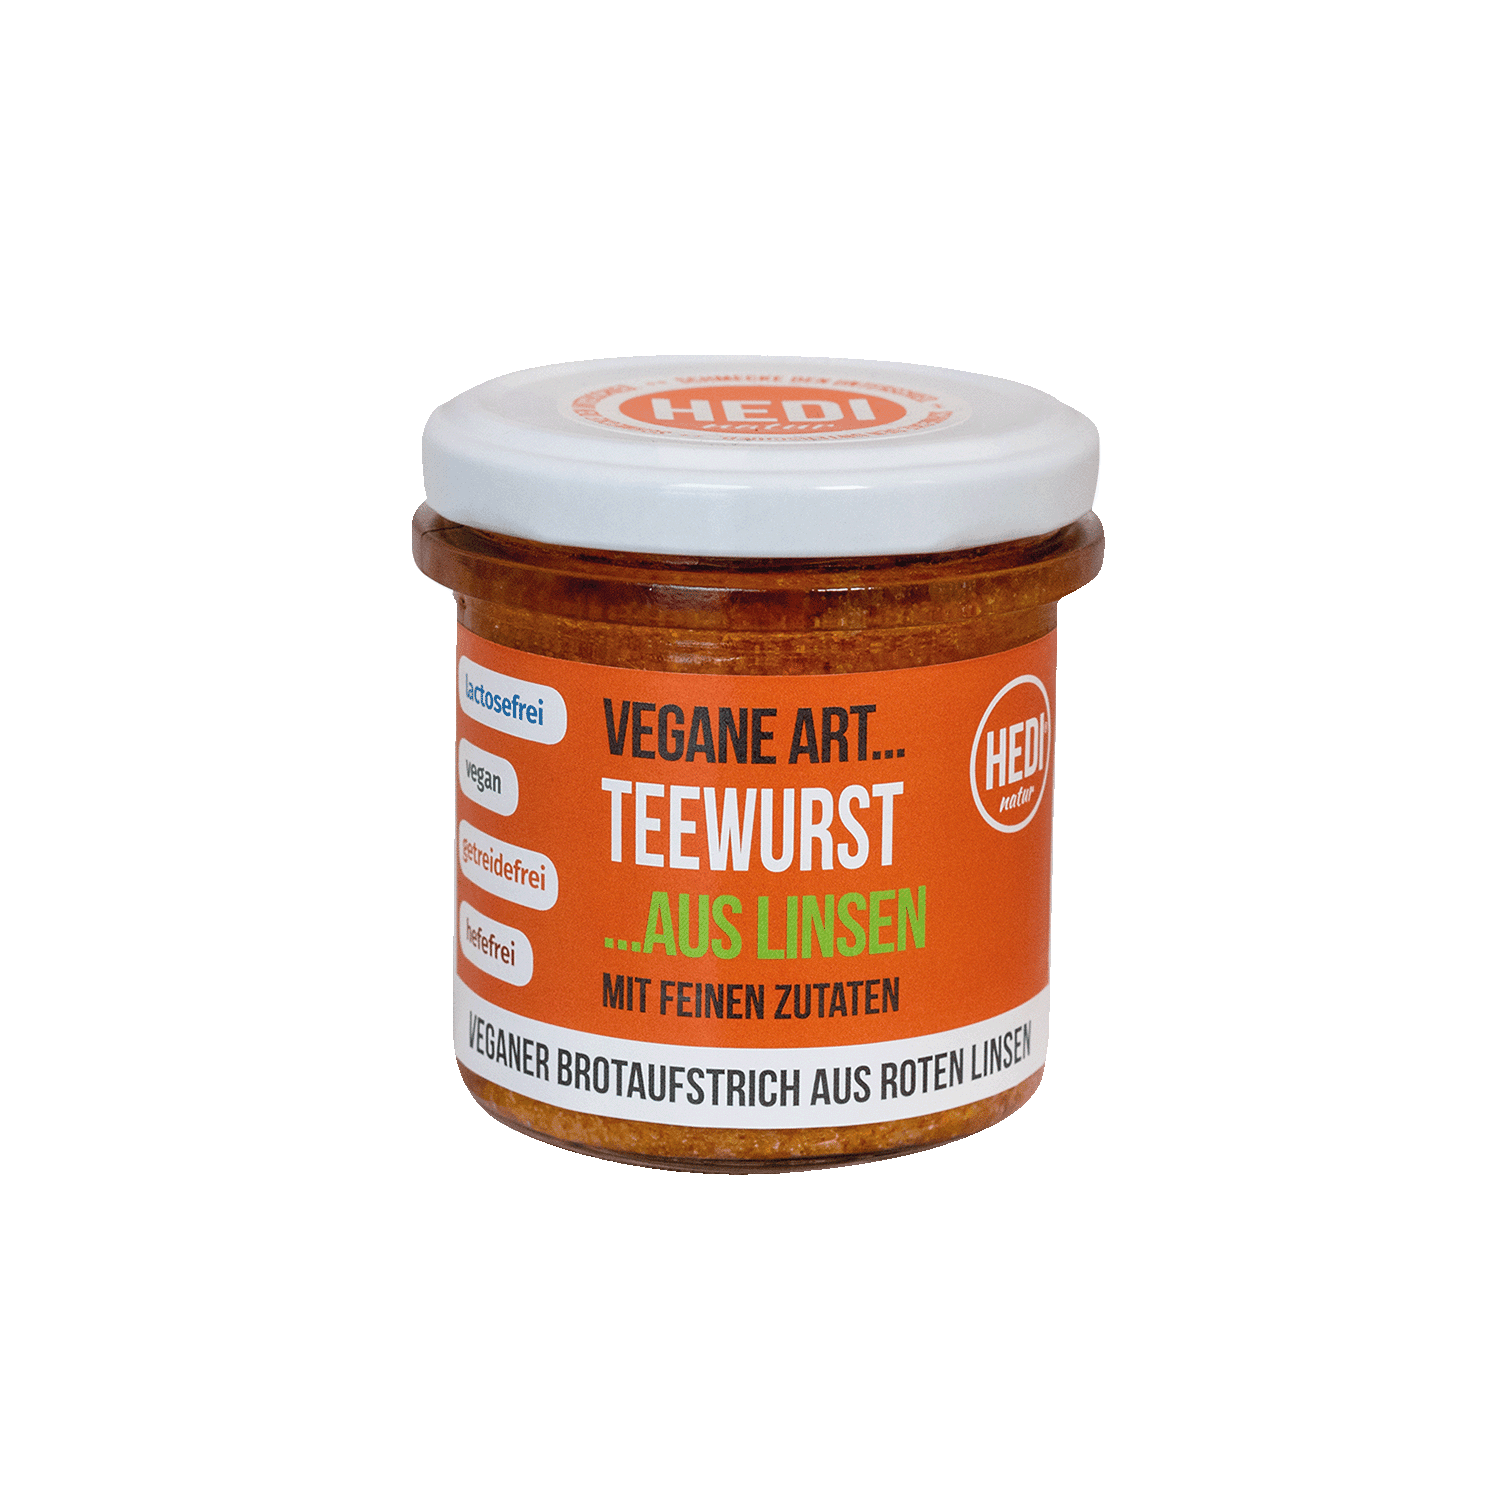 Vegane Art Teewurst aus Linsen, BIO, 140g